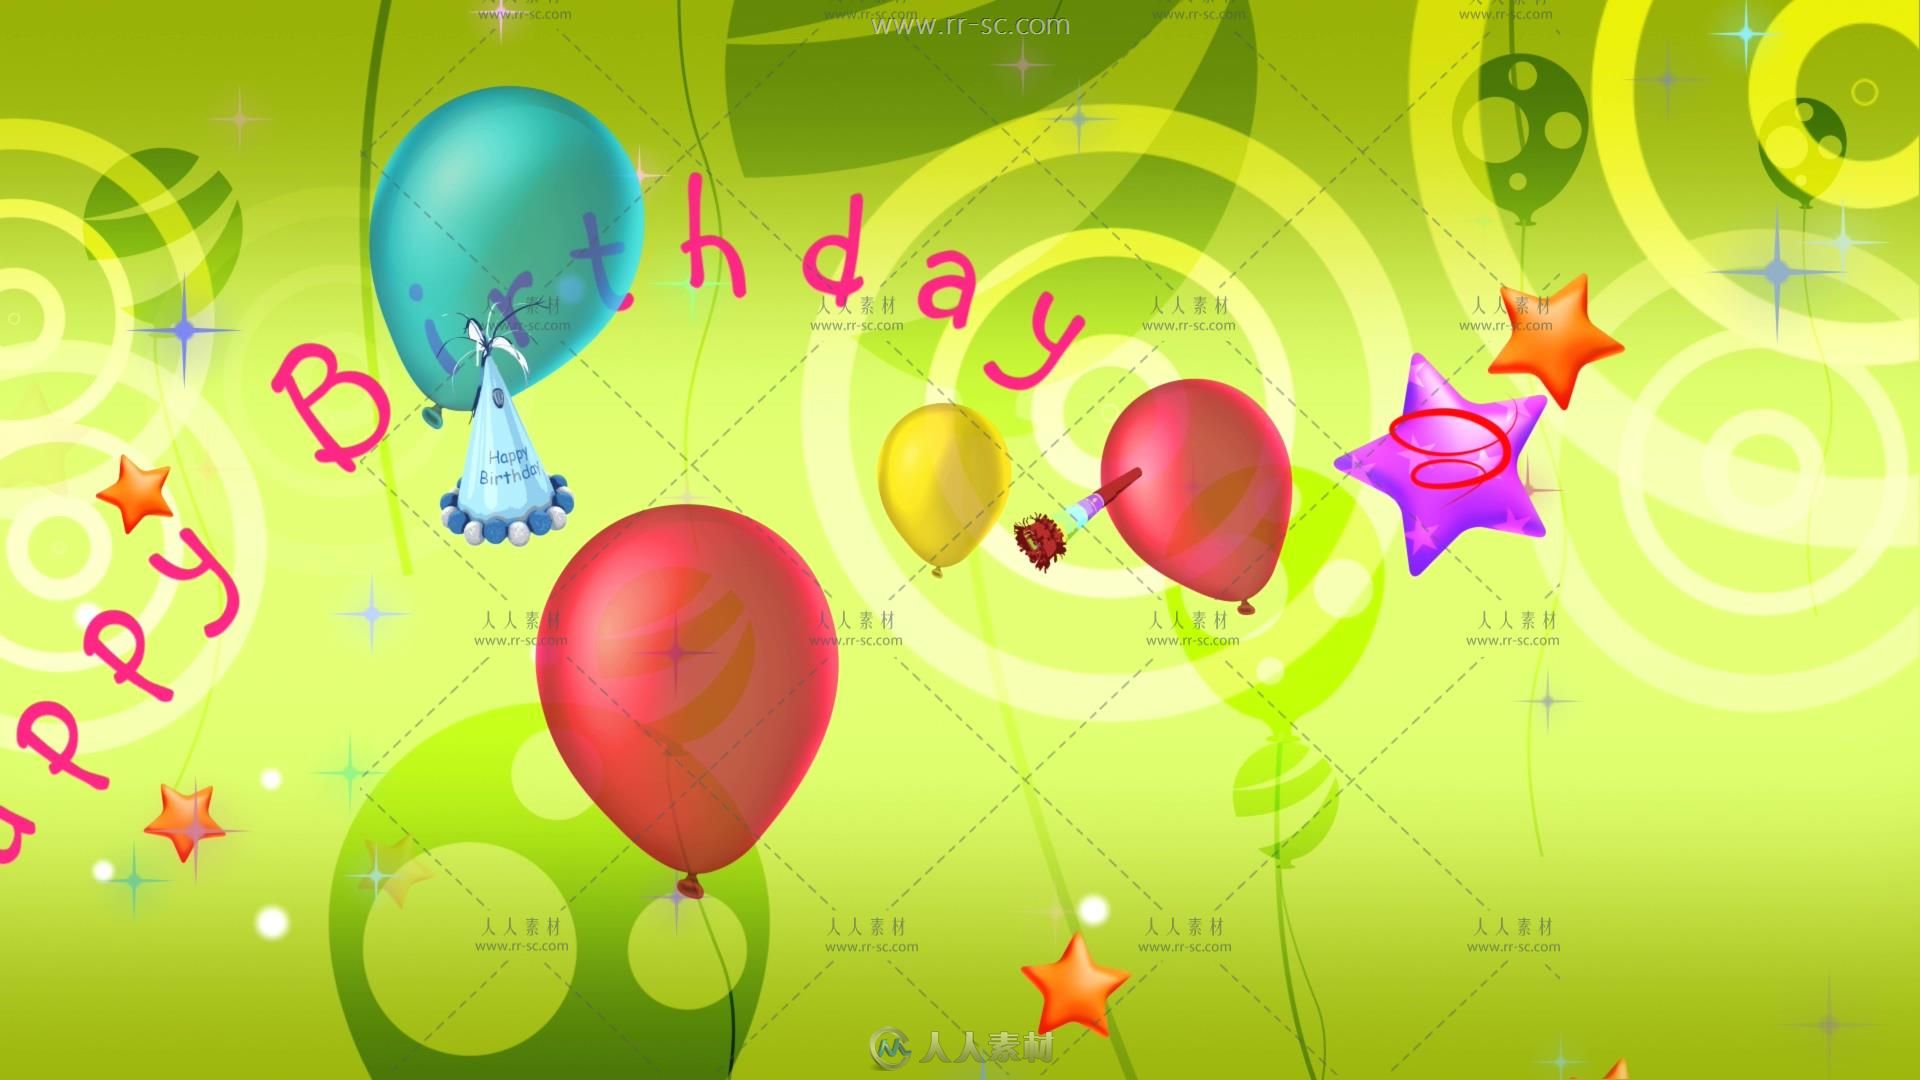 3組卡通生日氣球動畫視頻素材